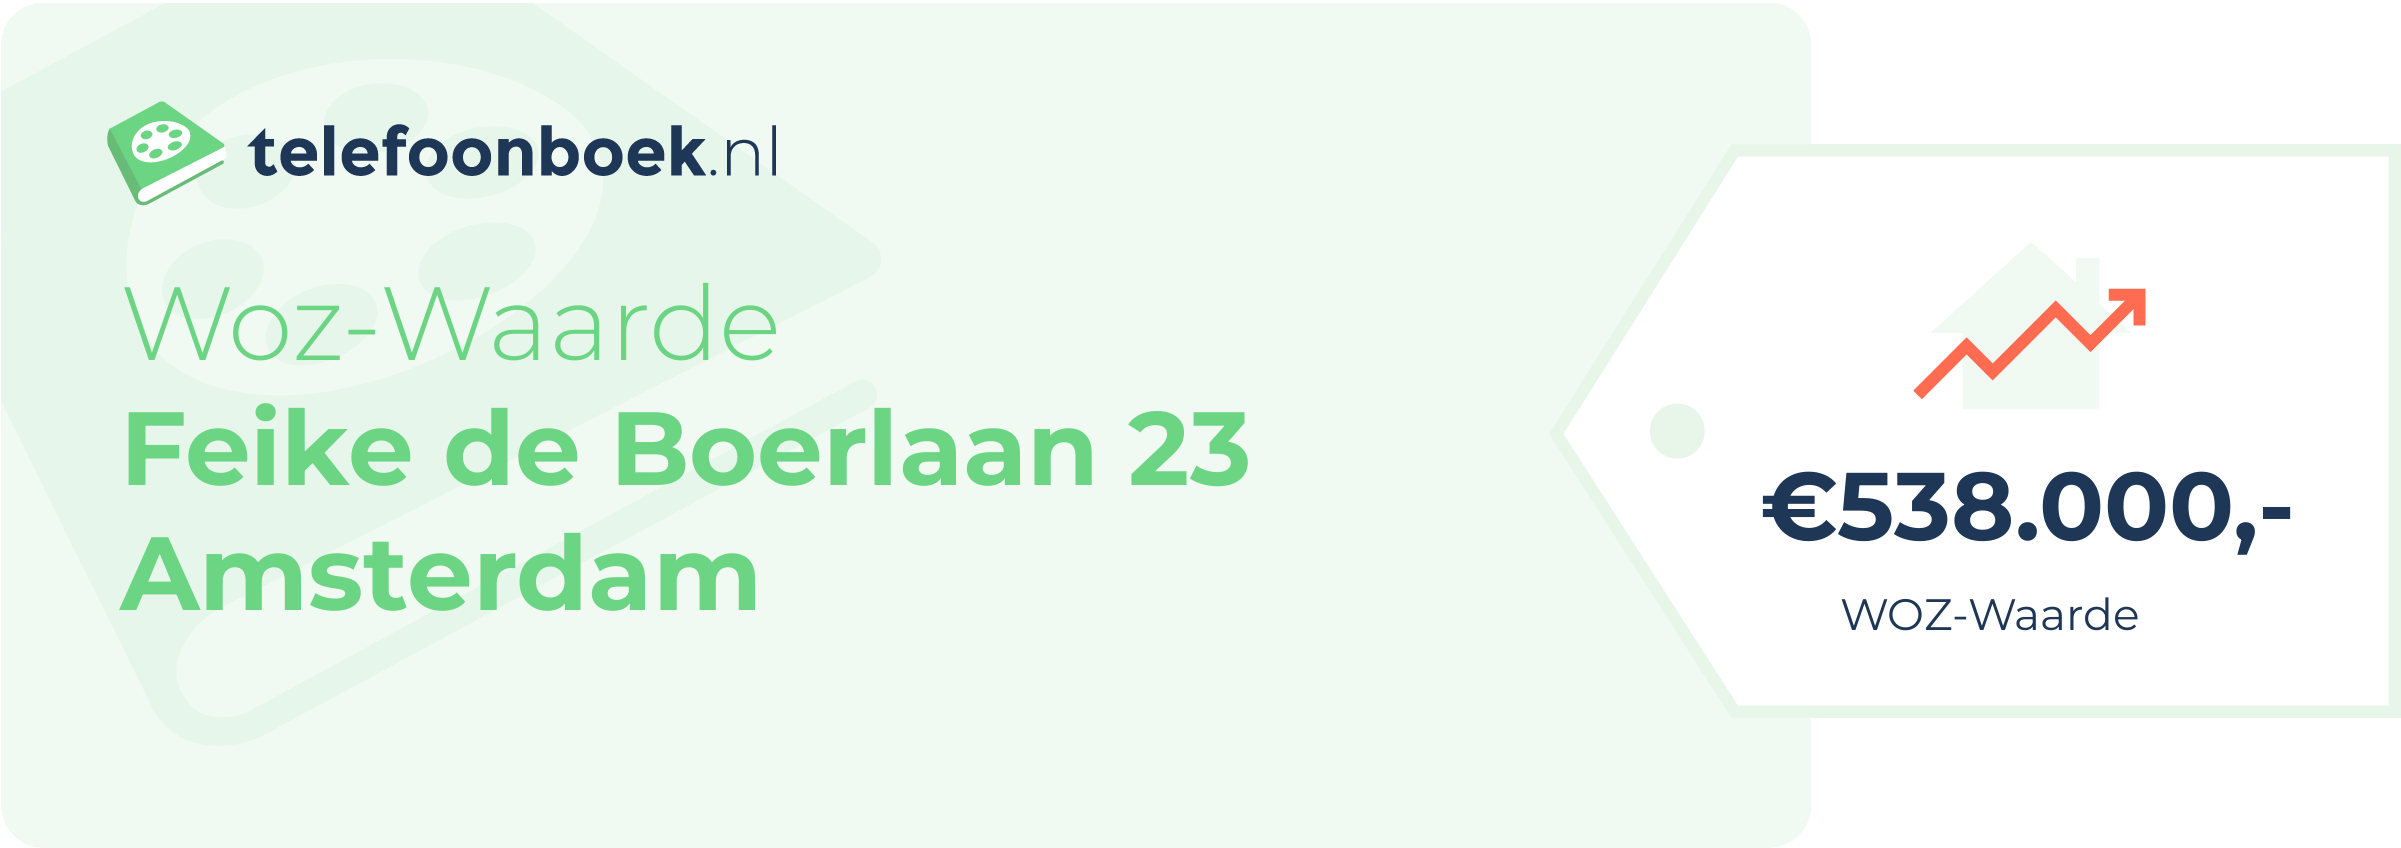 WOZ-waarde Feike De Boerlaan 23 Amsterdam